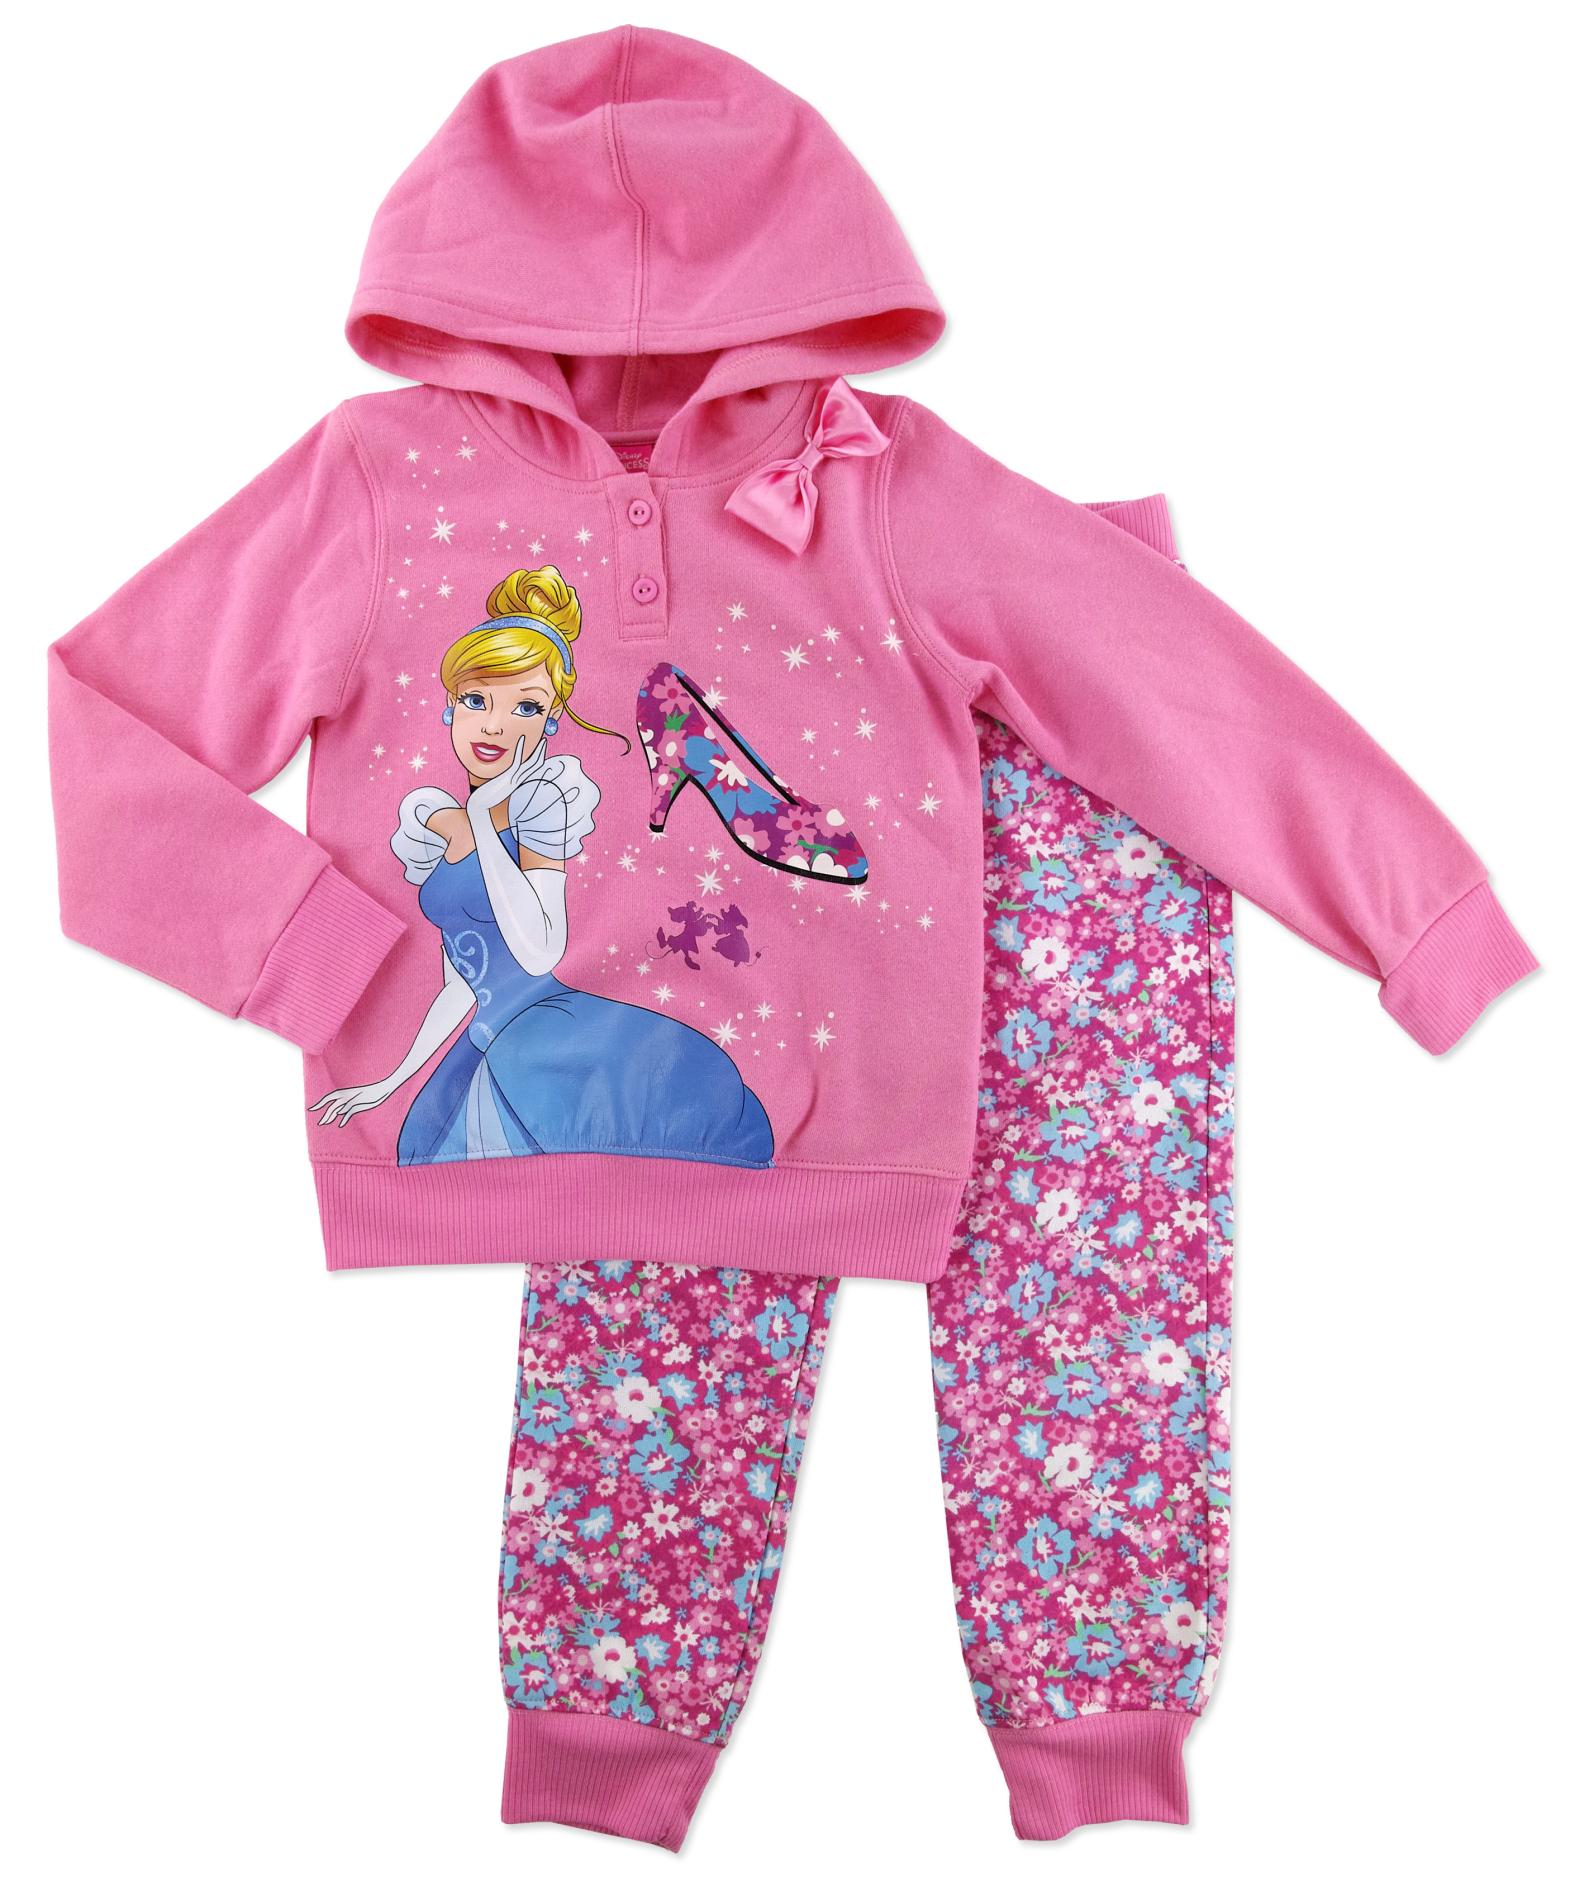 Disney Cinderella Girls Hoodie & Sweatpants   Floral   Kids   Kids